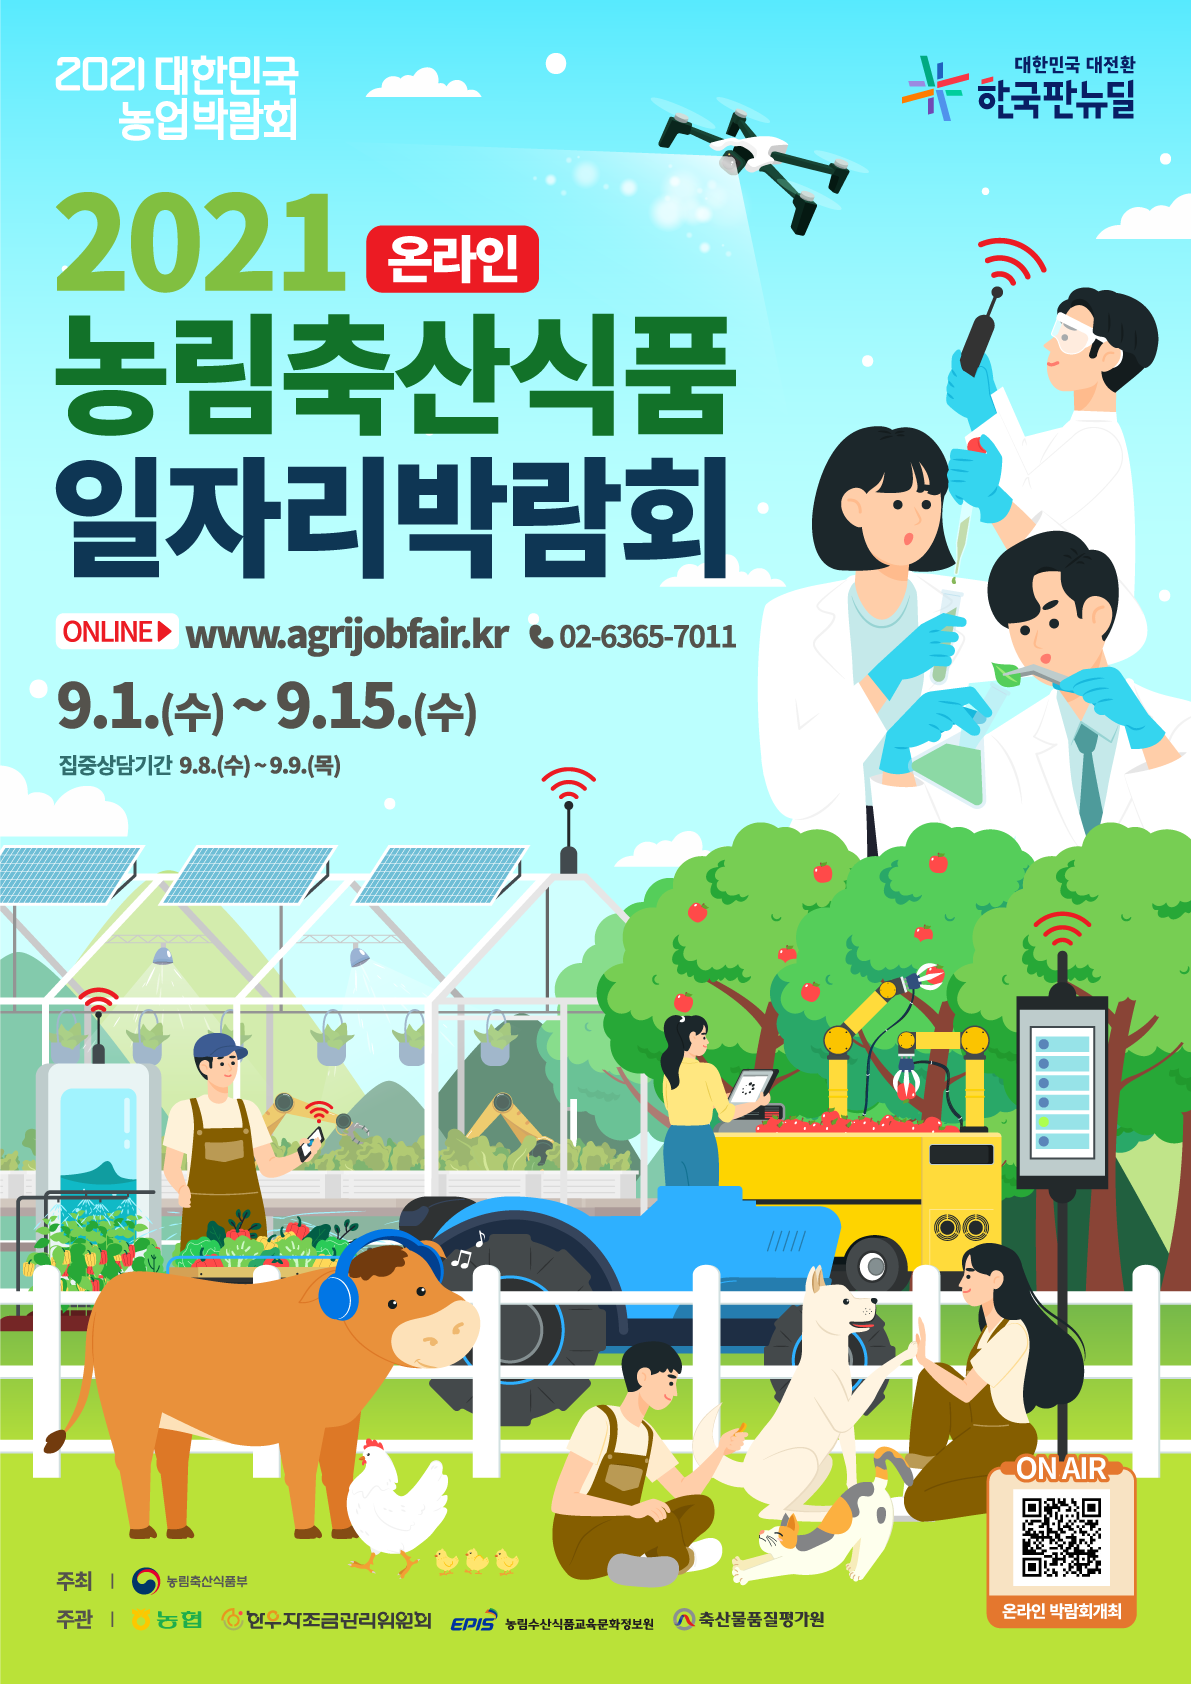 사본 -(농림축산식품 일자리 박람회) 포스터